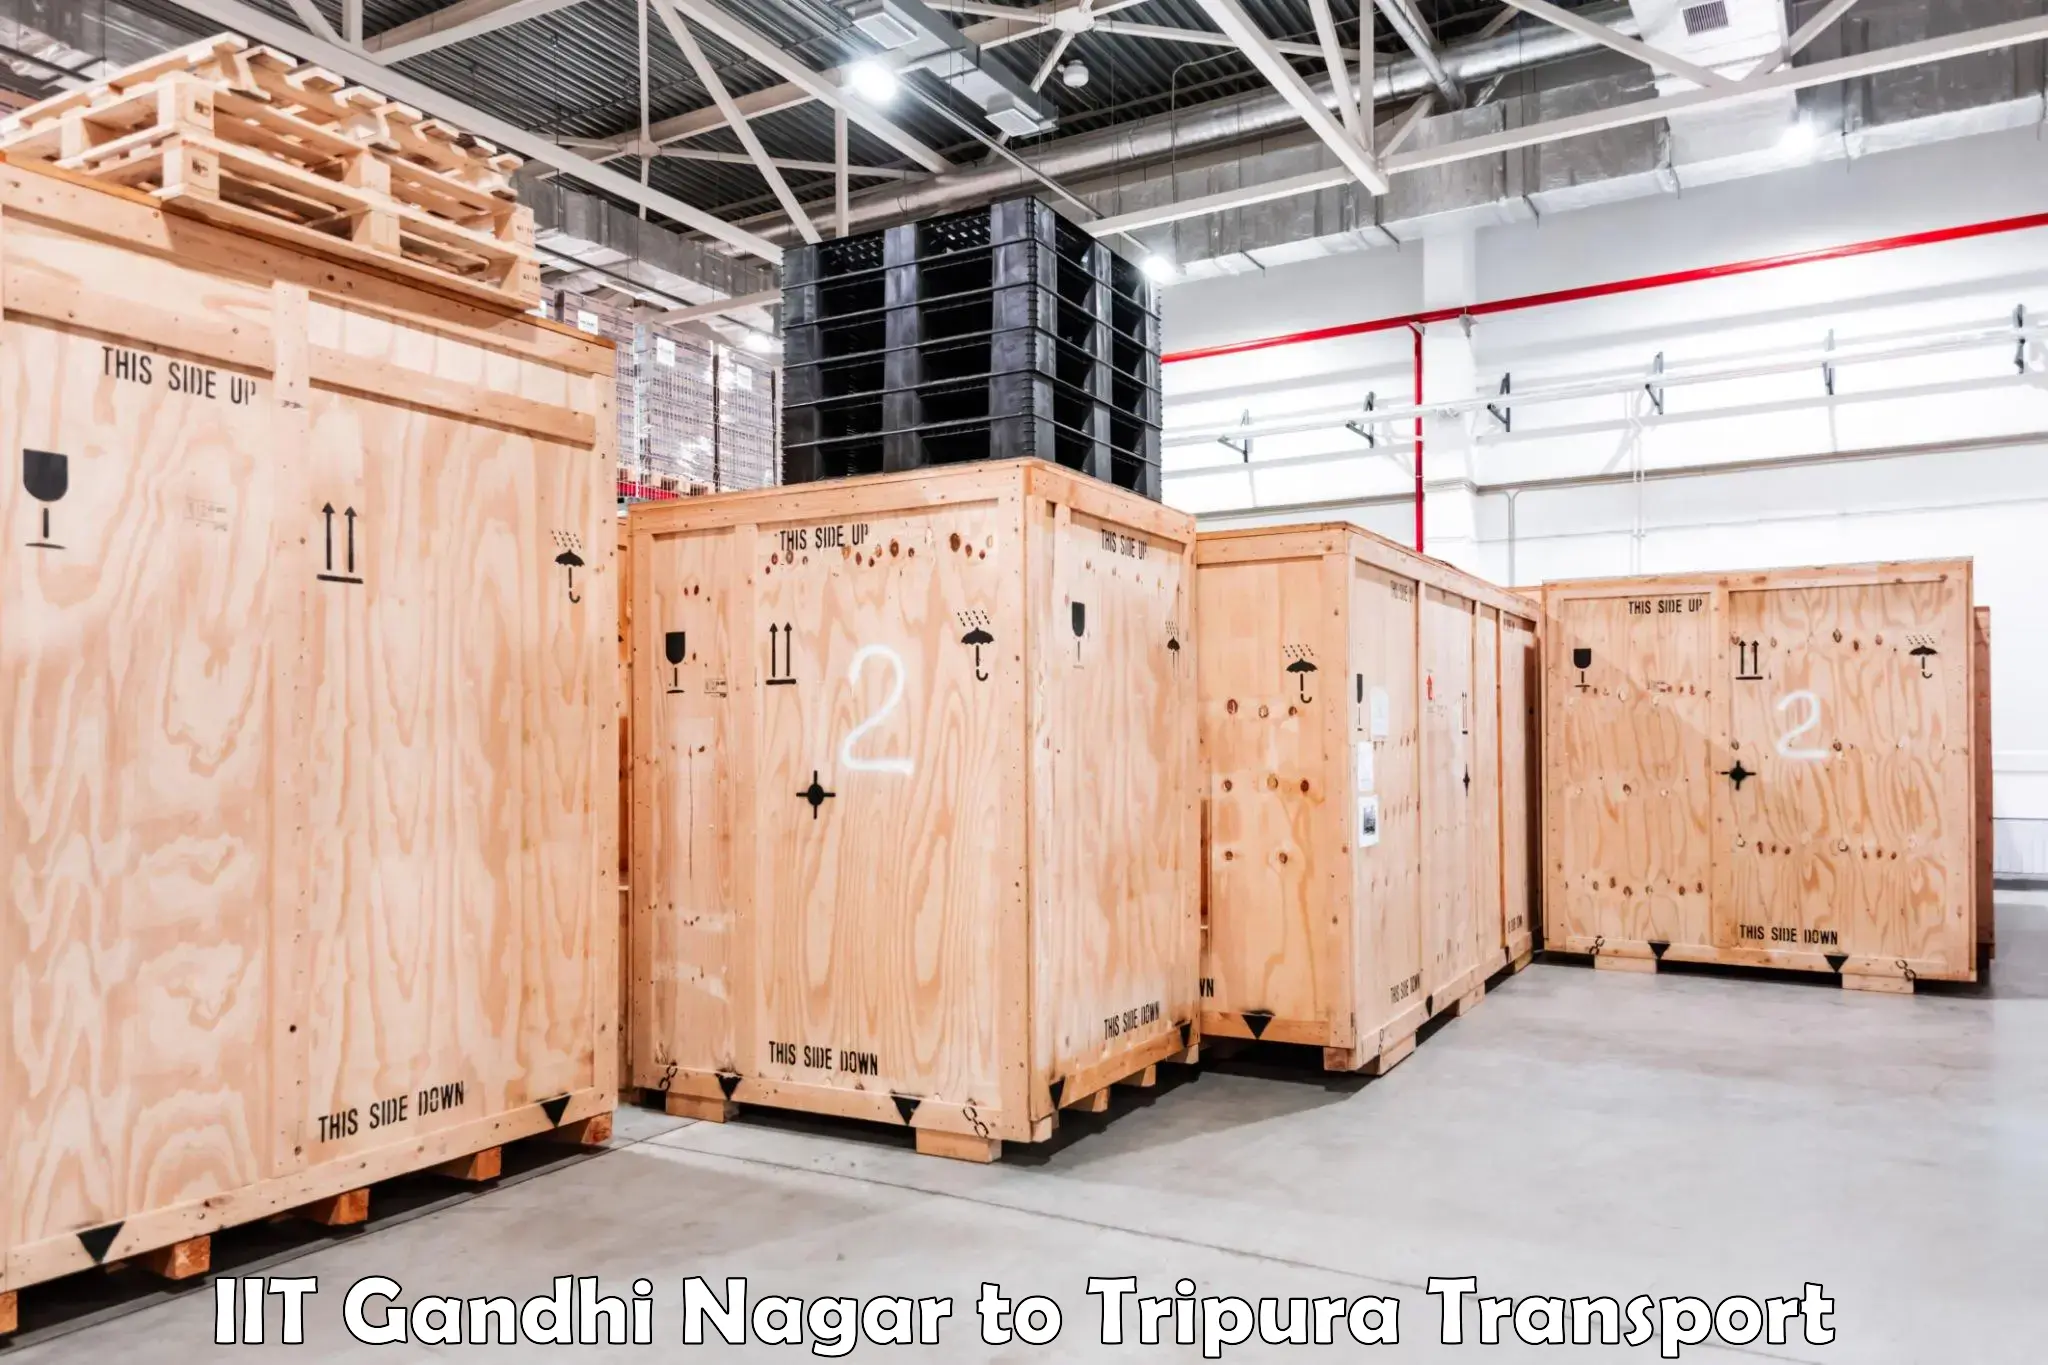 Daily transport service IIT Gandhi Nagar to Bishalgarh